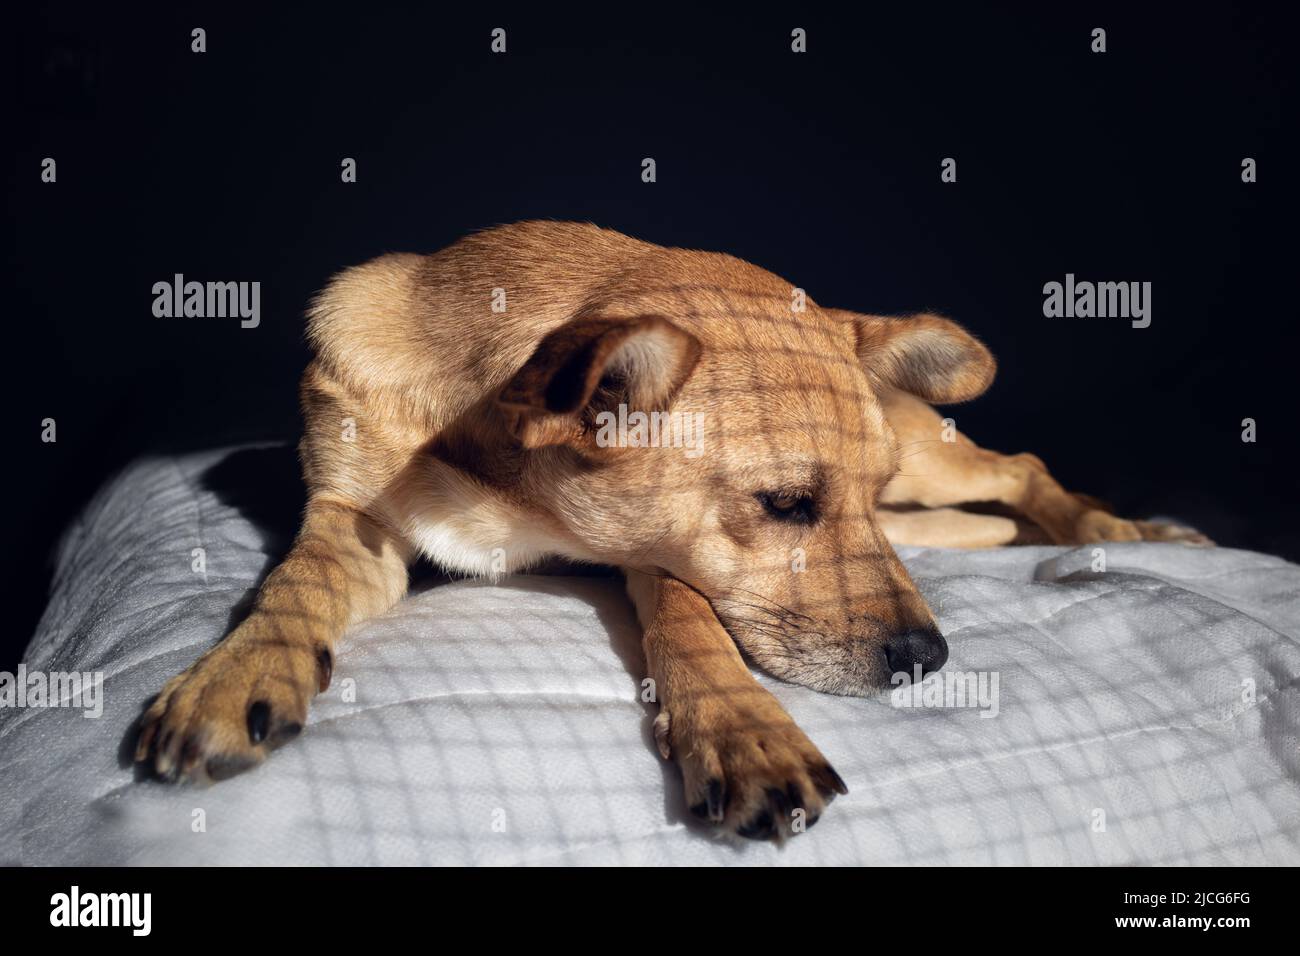 Un perro de raza mixta enjaulado tendido tristemente sobre una manta blanca en la oscuridad con sombras de jaula en el pelo Foto de stock